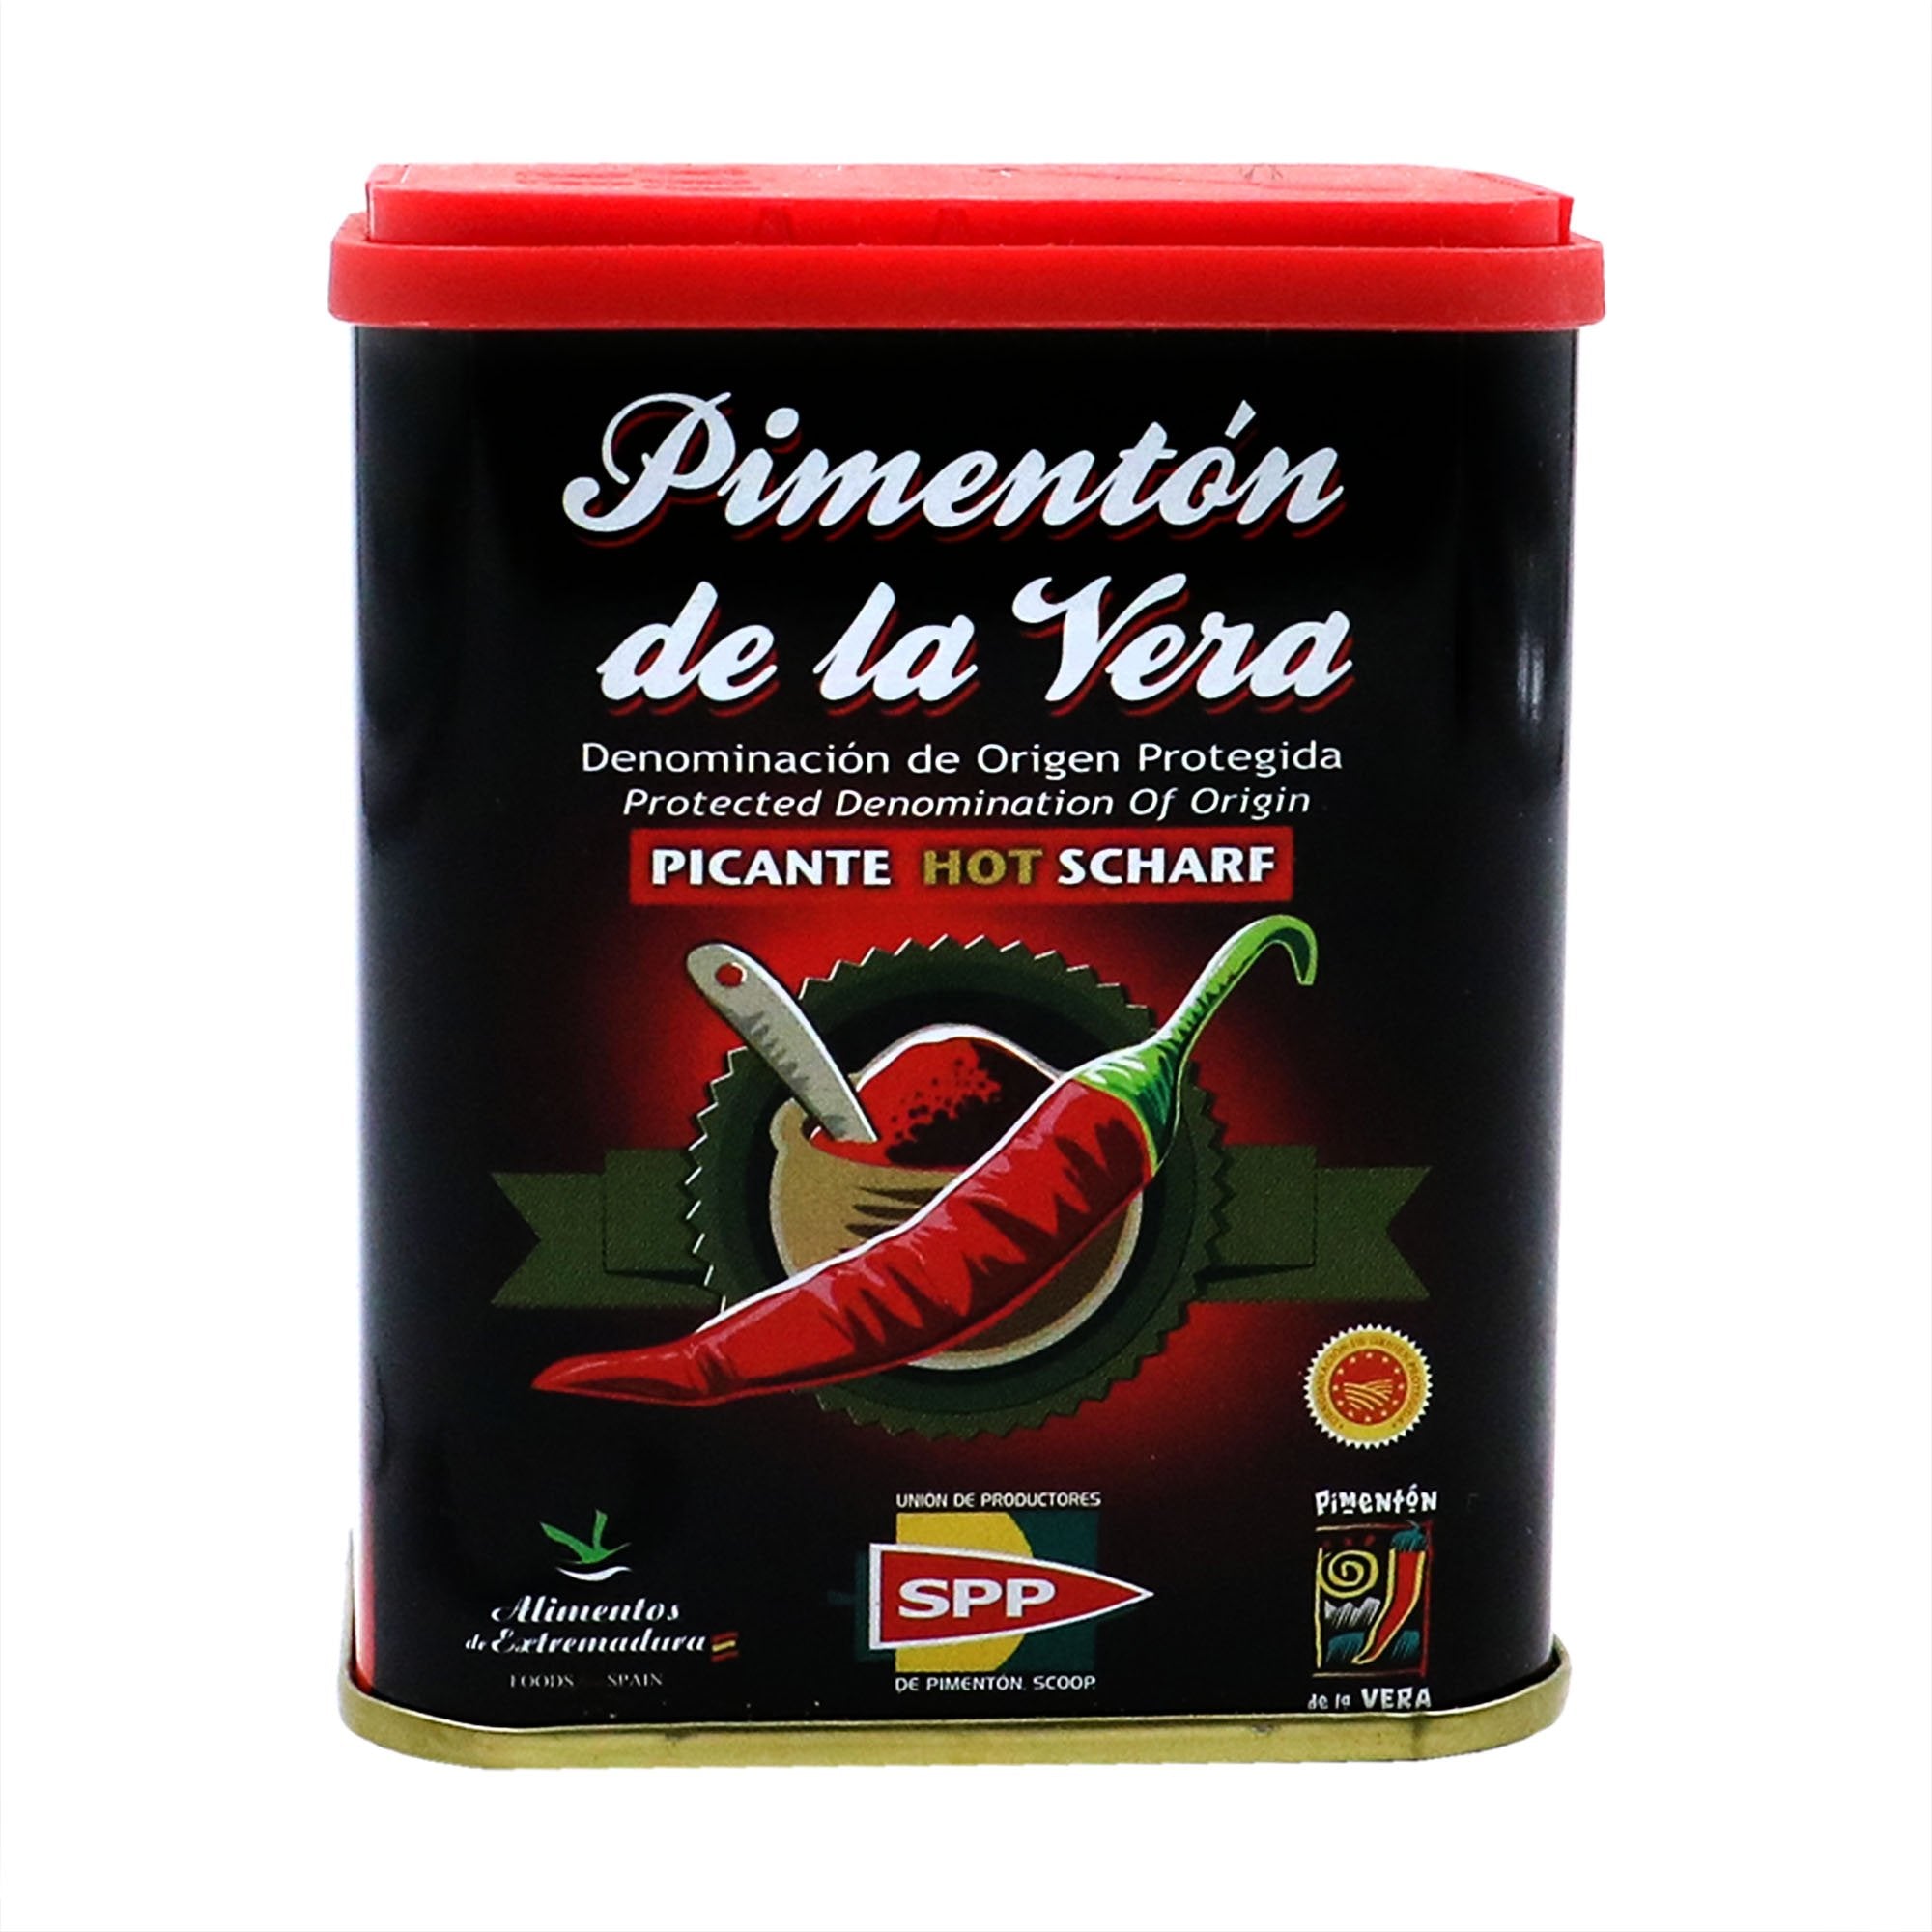 PIMENTÓN DE LA VERA Hot Paprika (PDO)